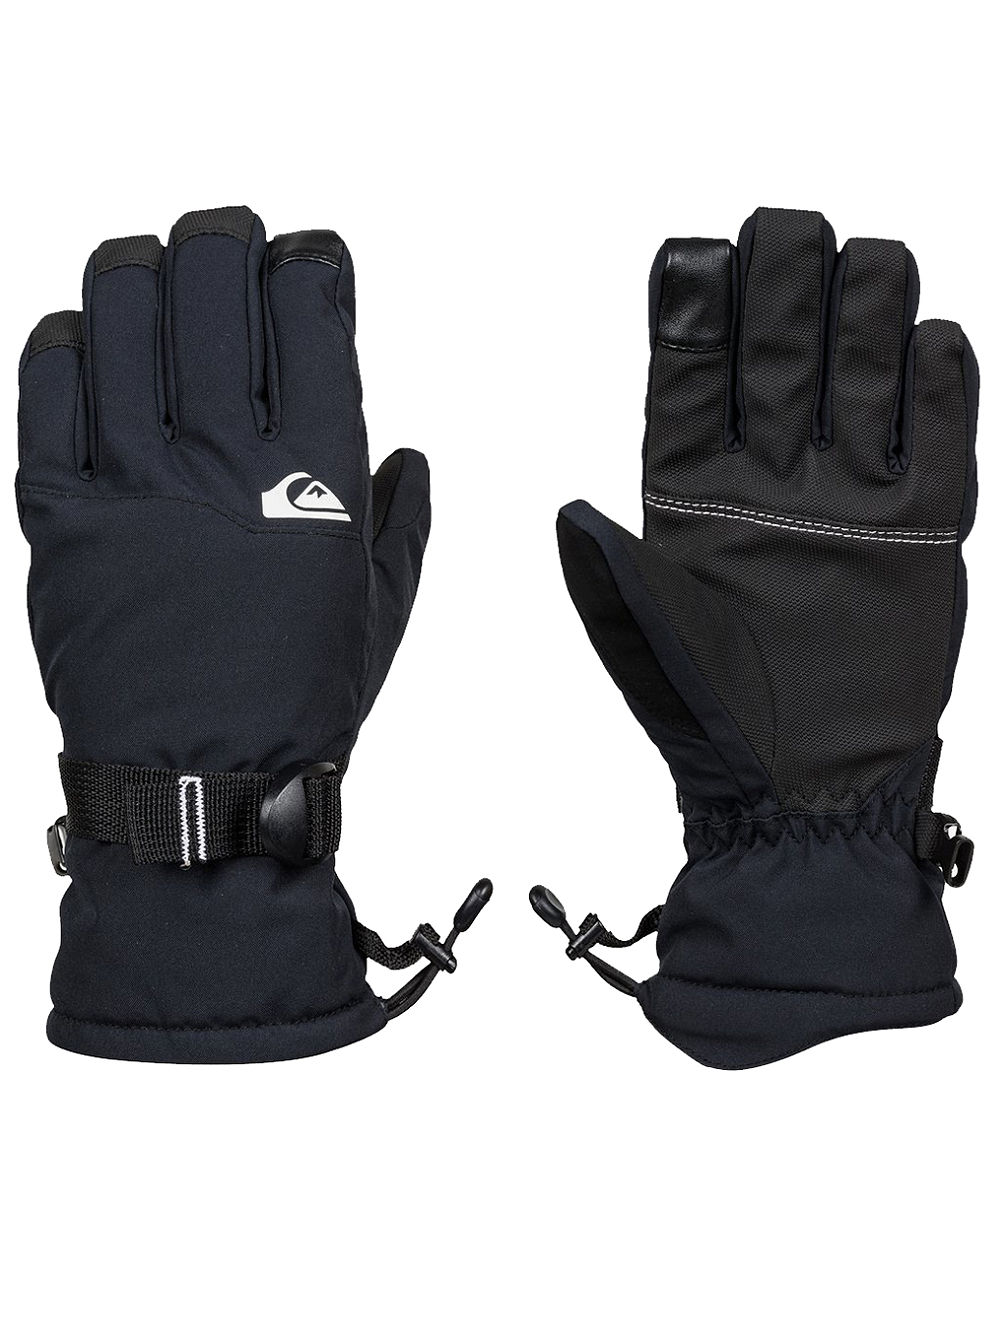 Mission Gloves